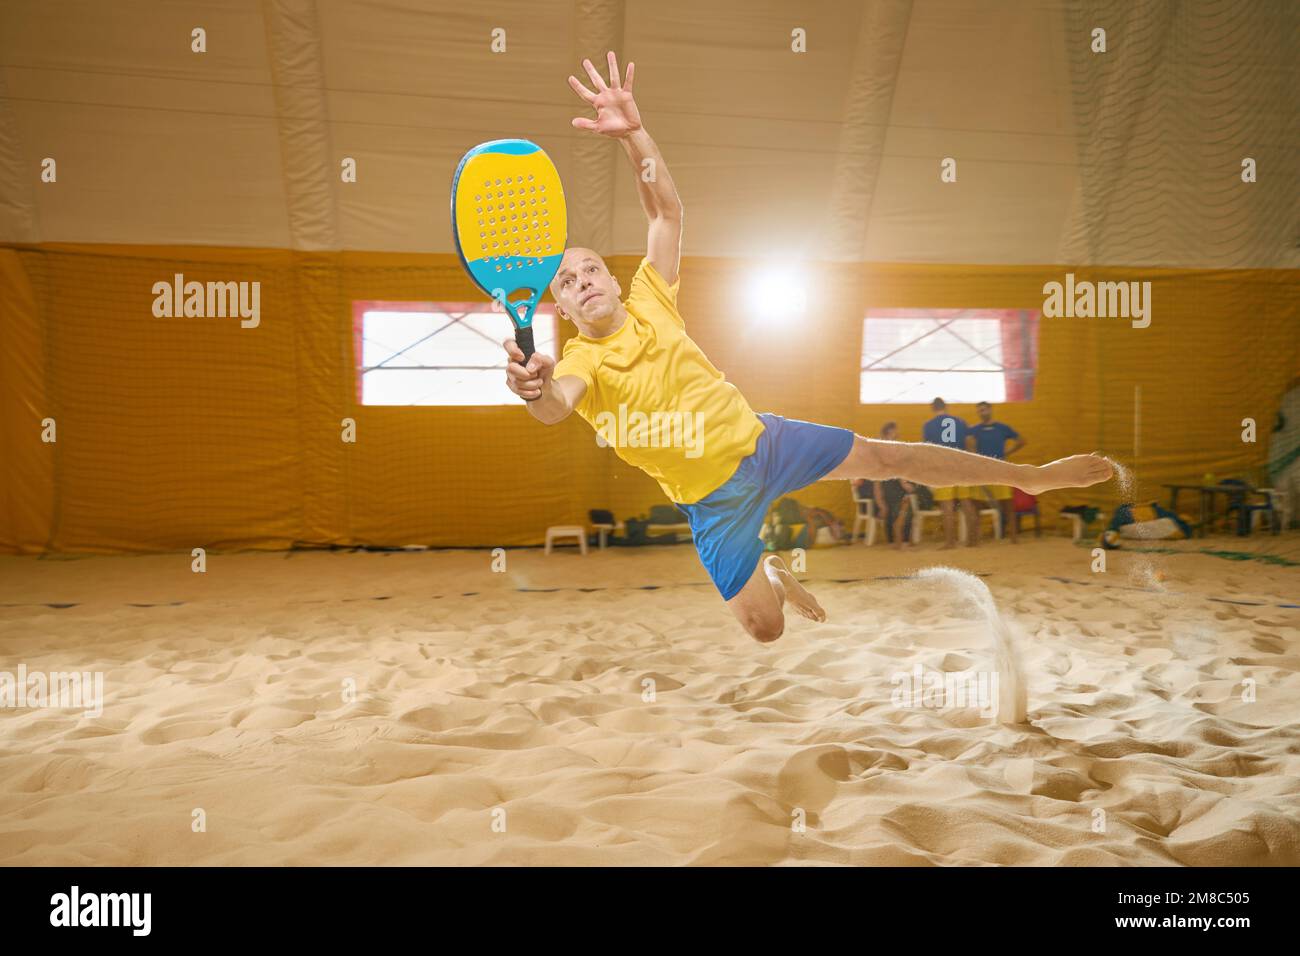 Der Mann fällt mit dem ganzen Körper auf Sand, während er Freskball spielt Stockfoto